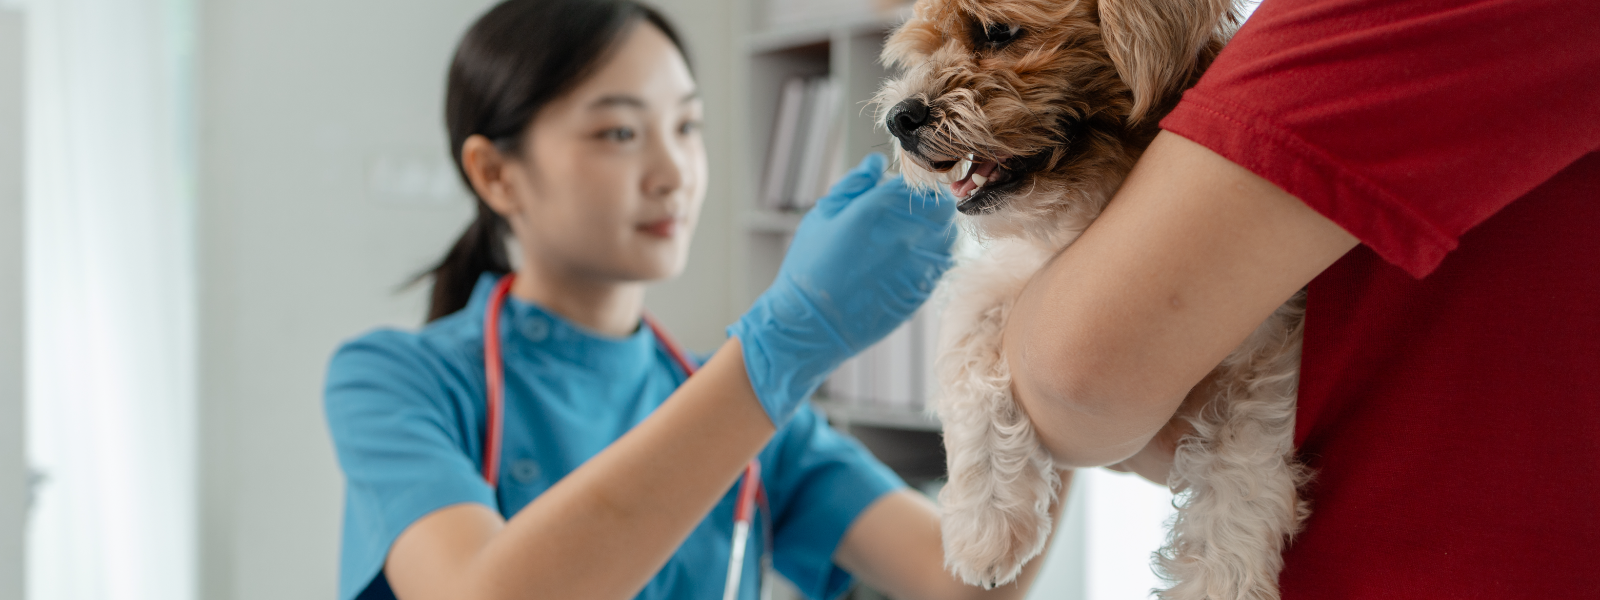 BALU LOOMAKLIINIK OÜ - Balu Loomakliinik pakub laialdasi veterinaarhoolduse teenuseid lemmikloomadele, et tagada iga lemm...